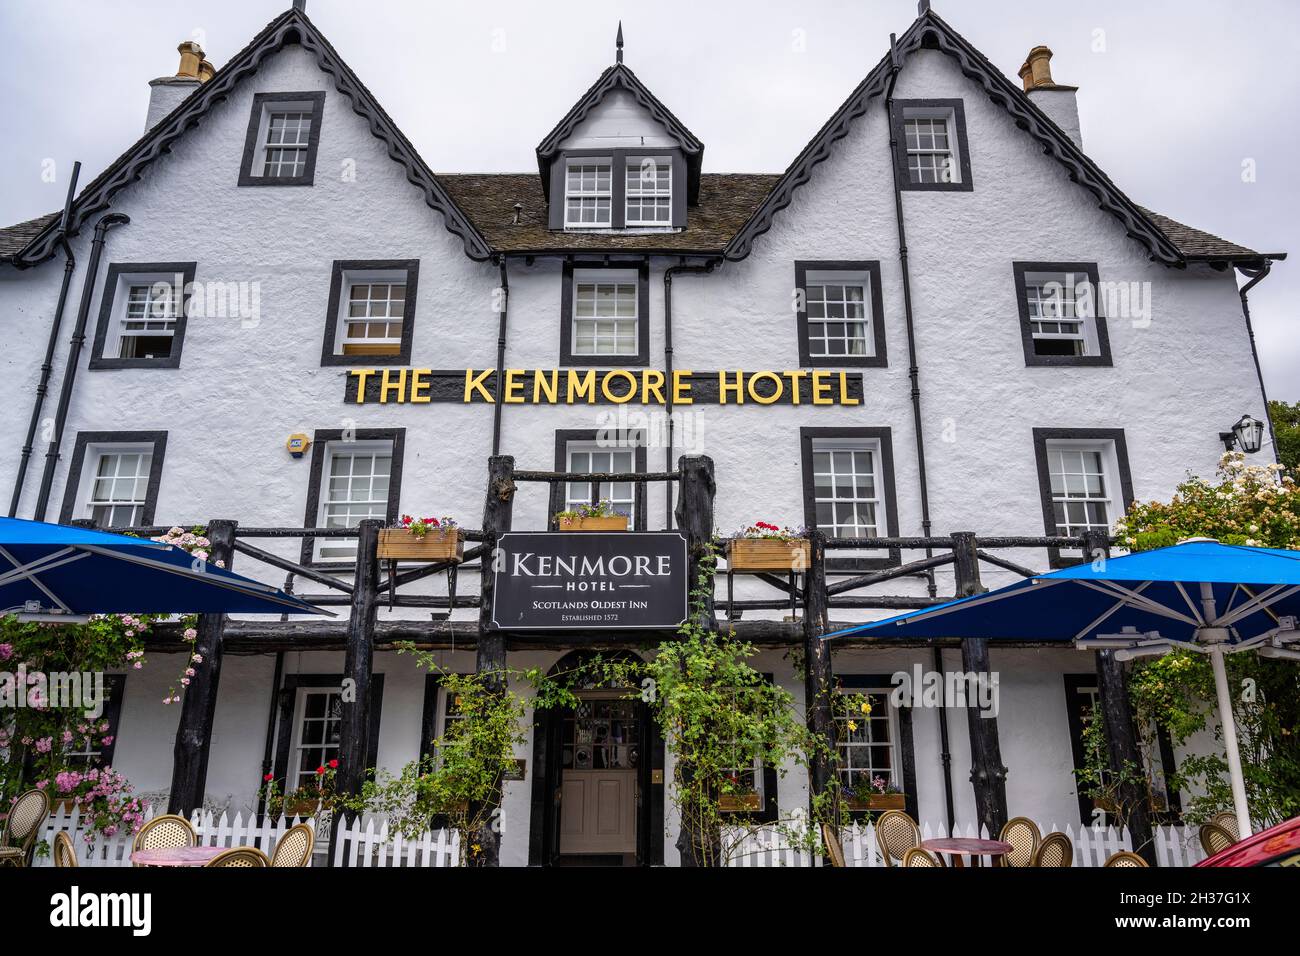 Das Kenmore Hotel, das als das älteste Hotel in Schottland gilt, befindet sich im malerischen Dorf Kenmore in Highland Perthshire, Schottland, Großbritannien Stockfoto